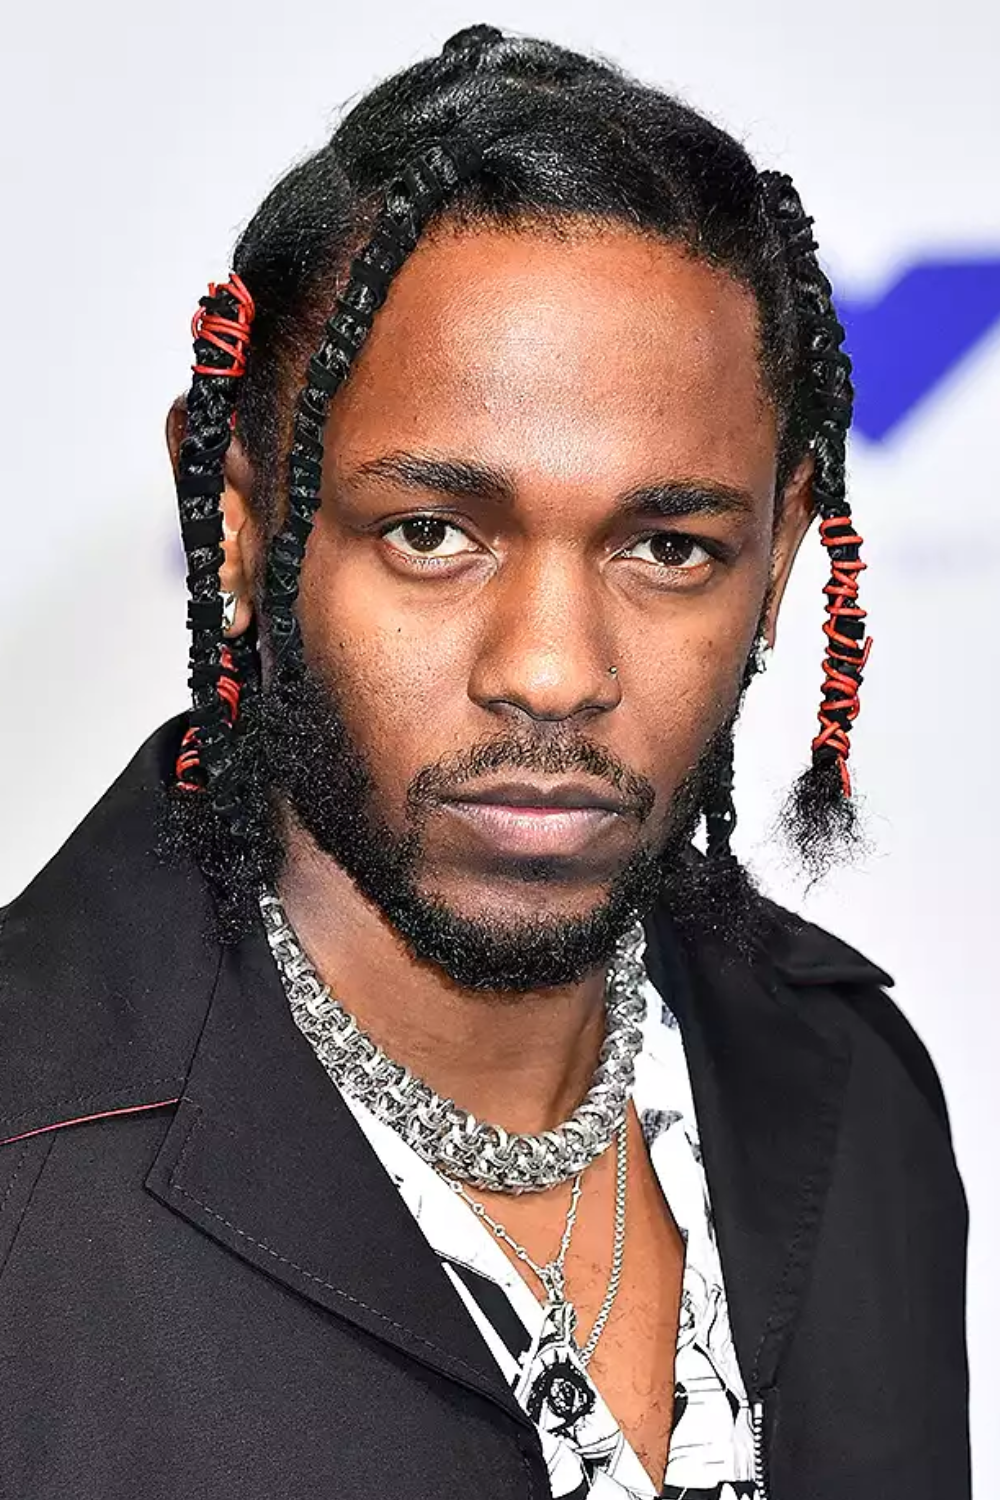 Kendrick Lamar vma appearance